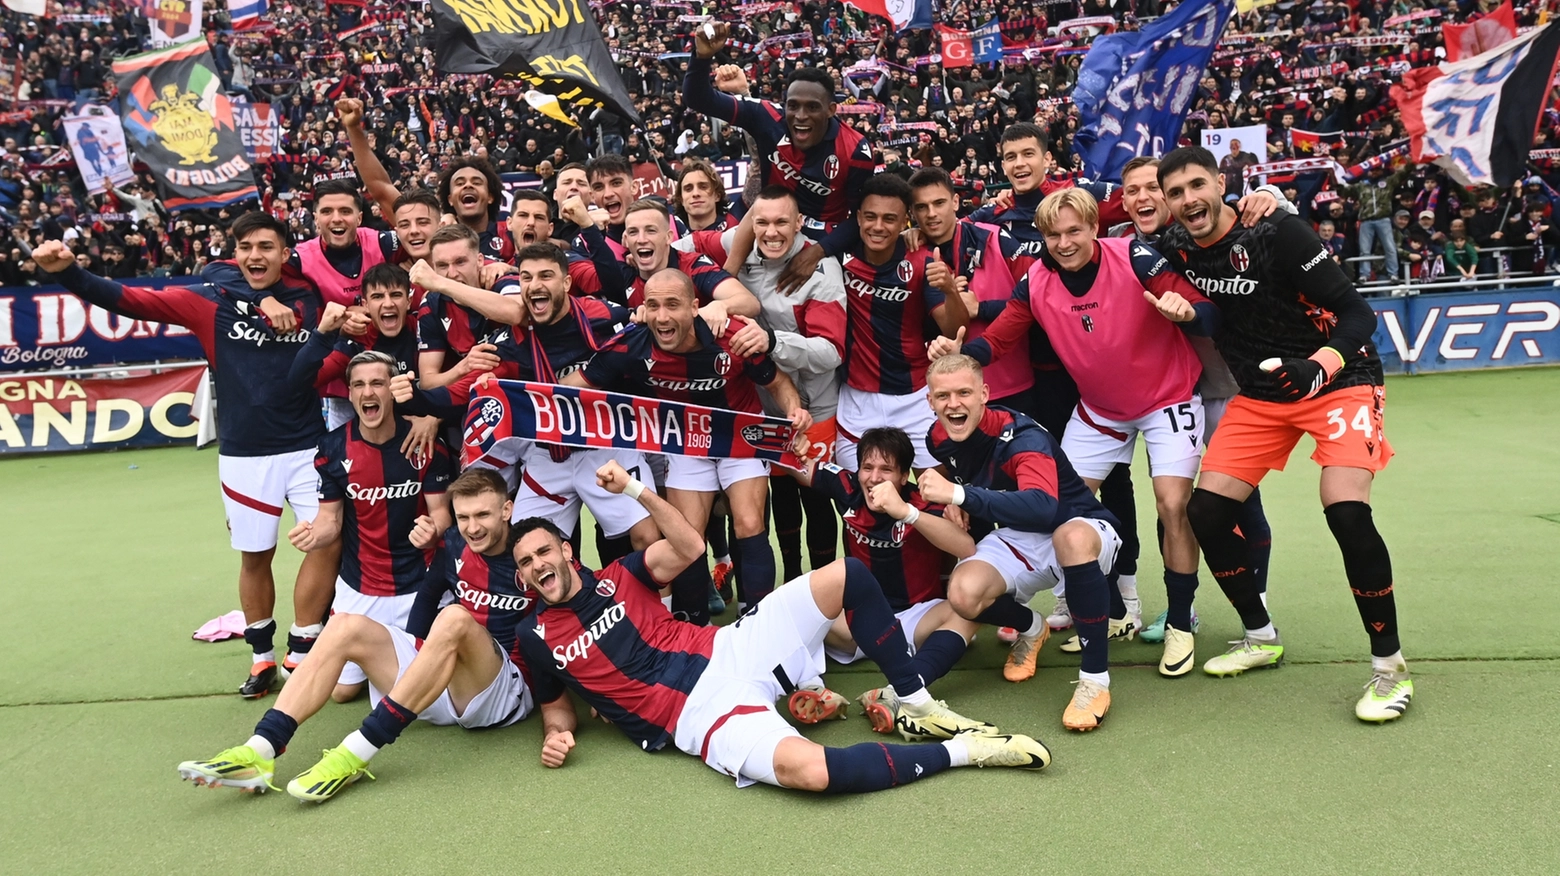 La bella immagine dei giocatori del Bologna a fine gara che festeggiano la vittoria contro la Salernitana (foto Schicchi)